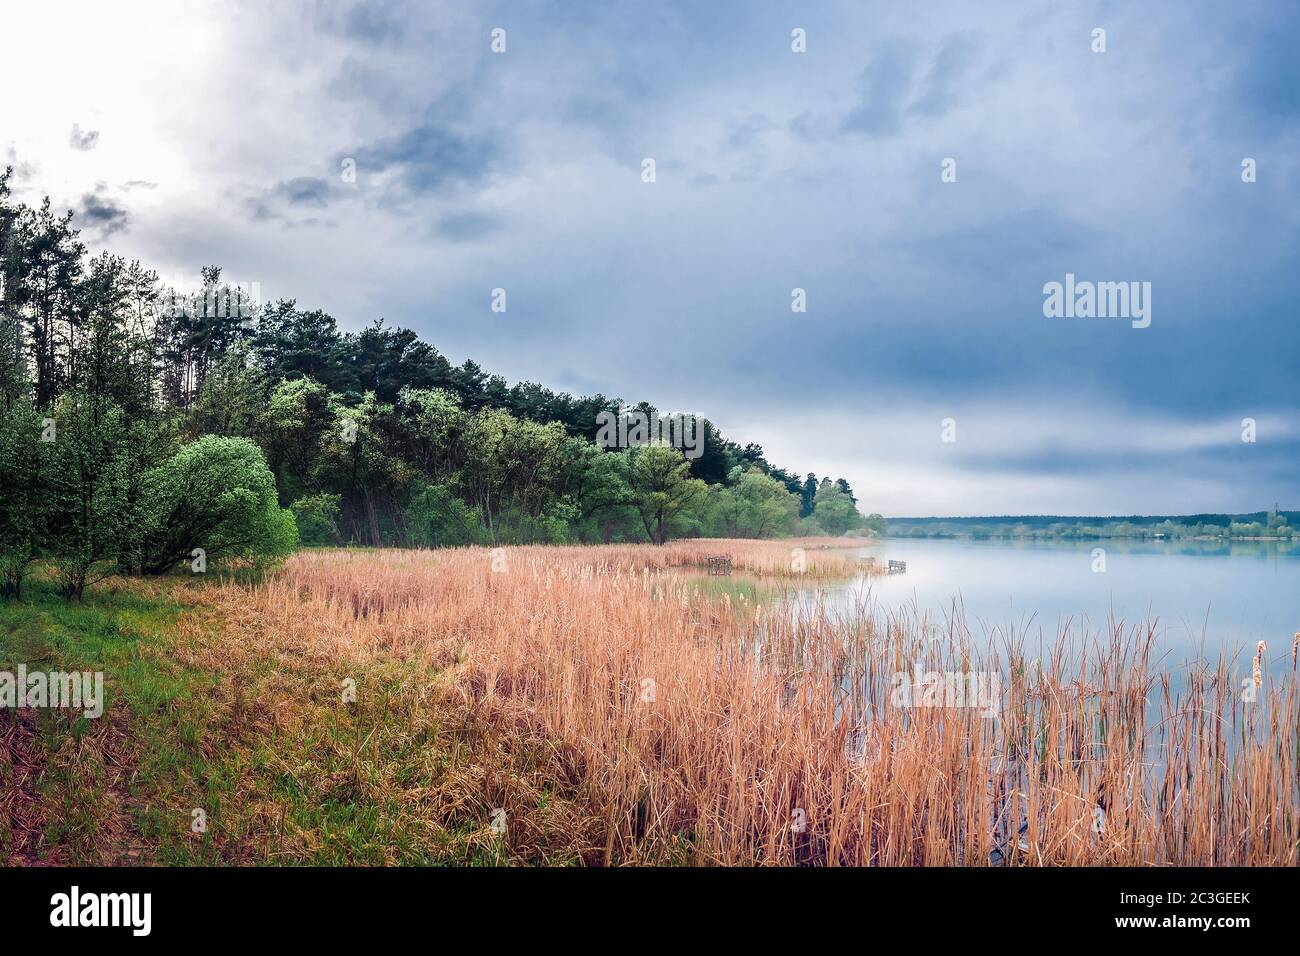 vista panoramica della foresta sul lago e scirpus nella nebbia con le nuvole blu tuose. Stagno 15, noto come la quinta glade. Foto Stock